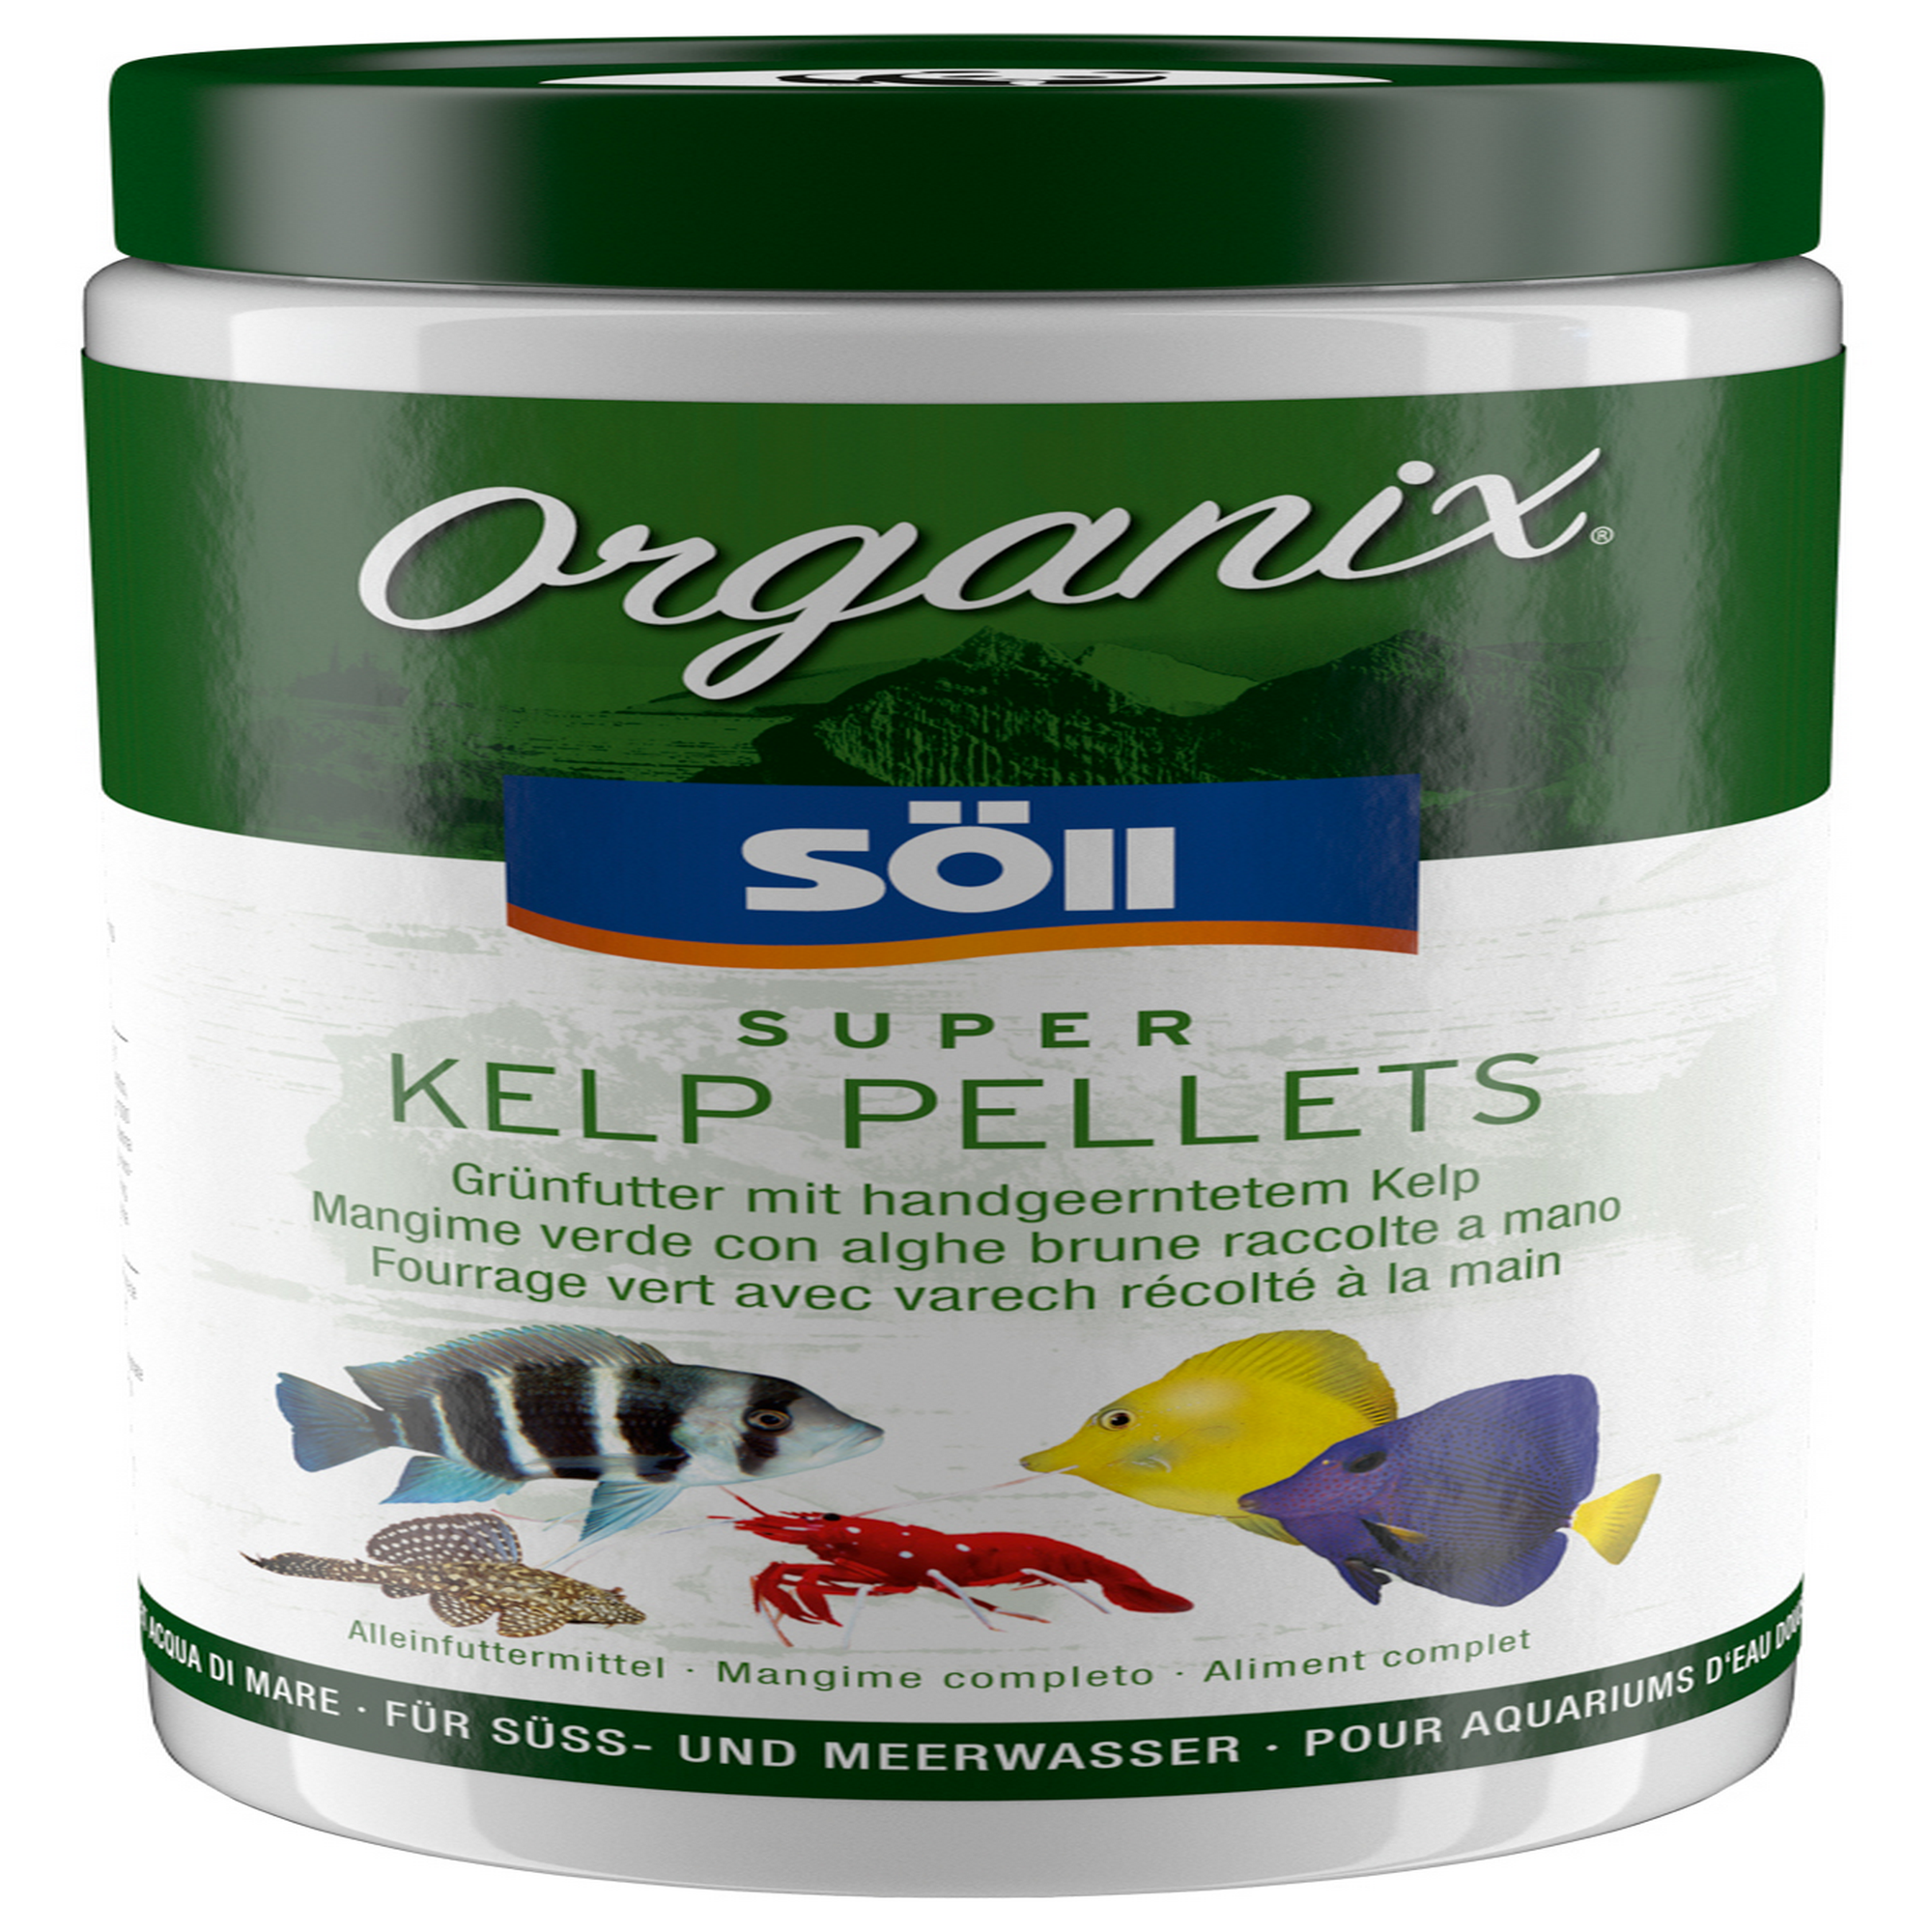 Organix Super Kelp Pellets 1 l + product picture